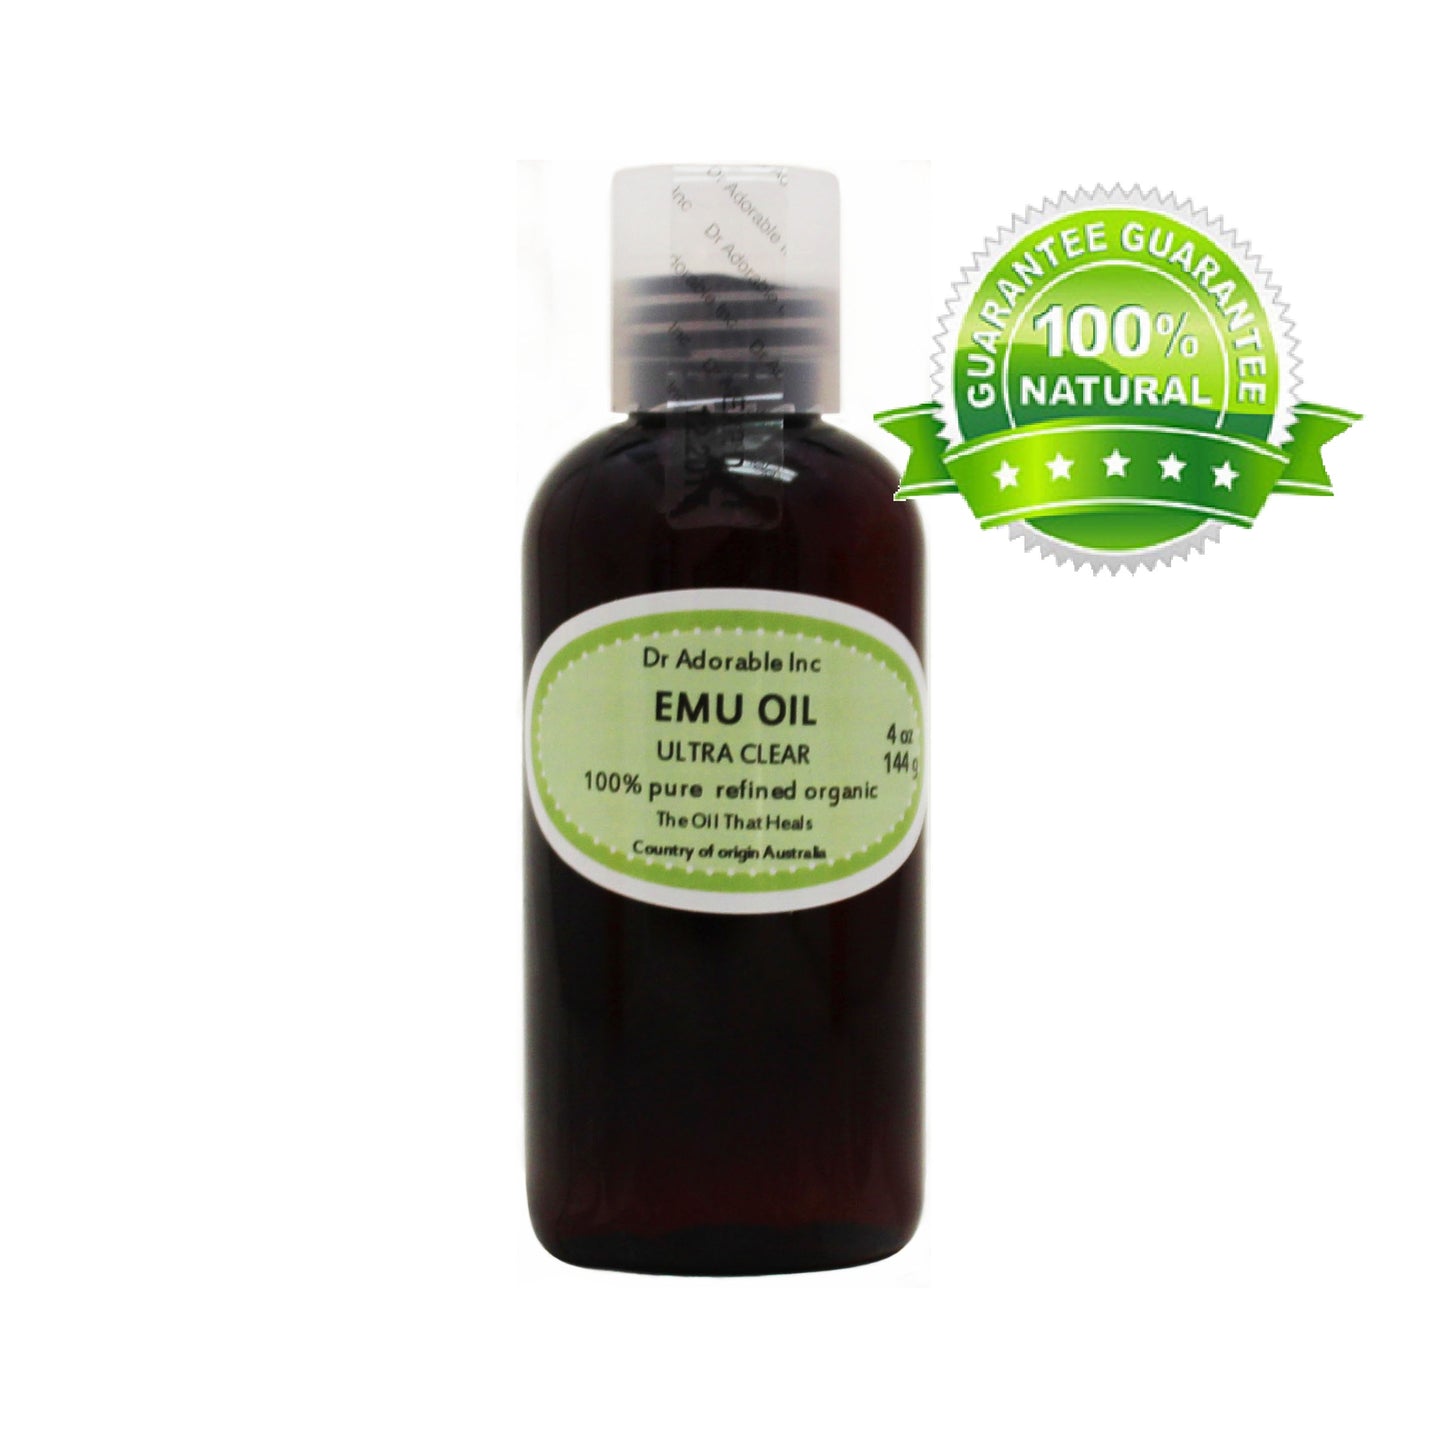 Emu Clear Oil - 100% Pure Natural Organic